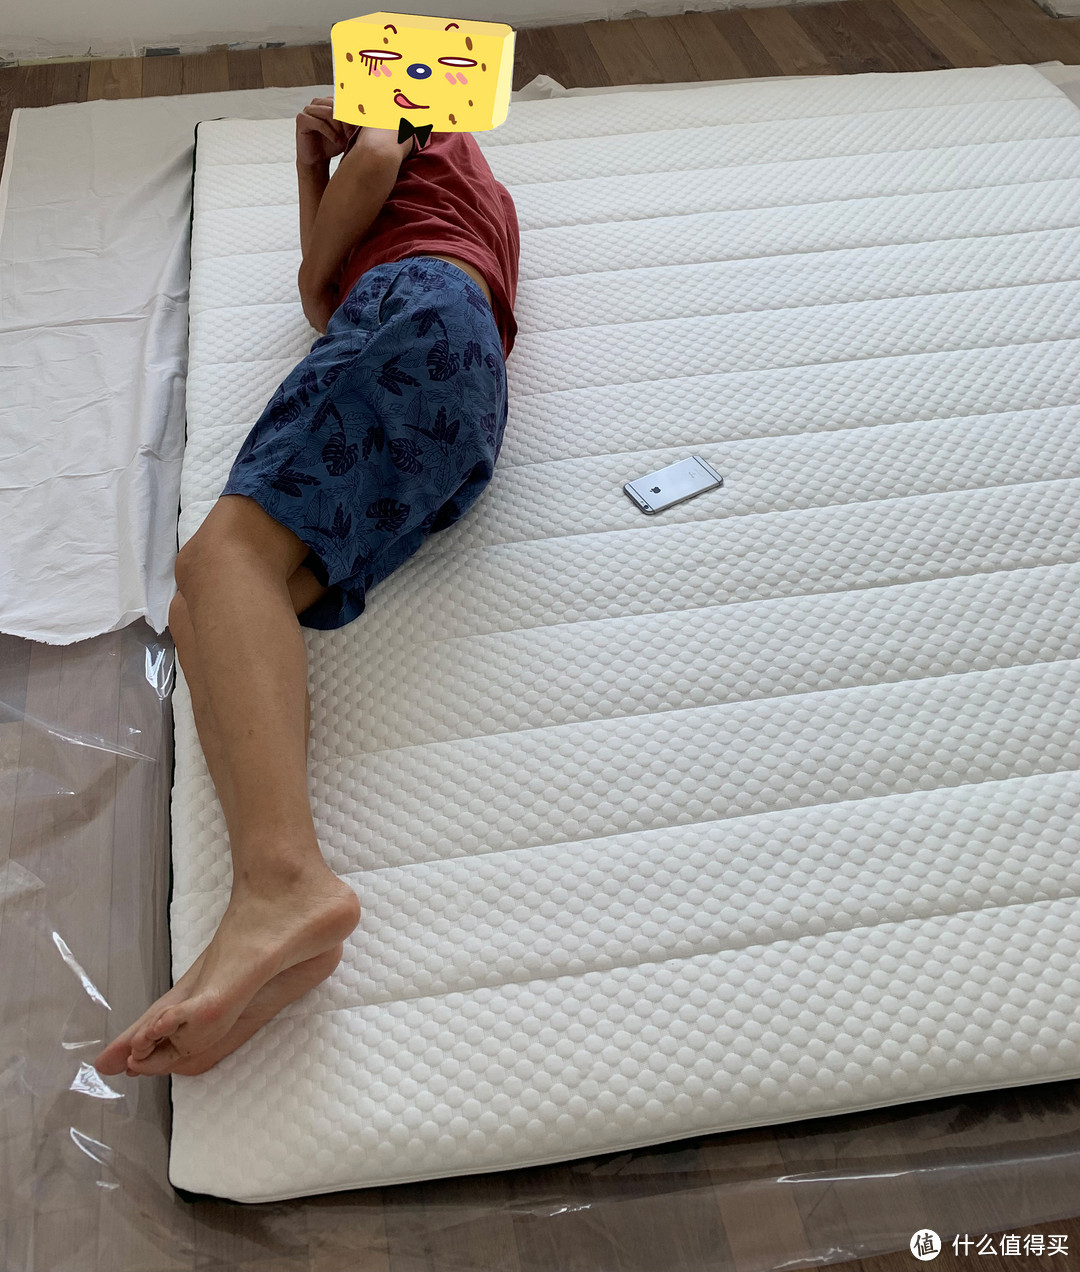 菠萝斑马的问候，空气纤维床垫让我们躺在了一起